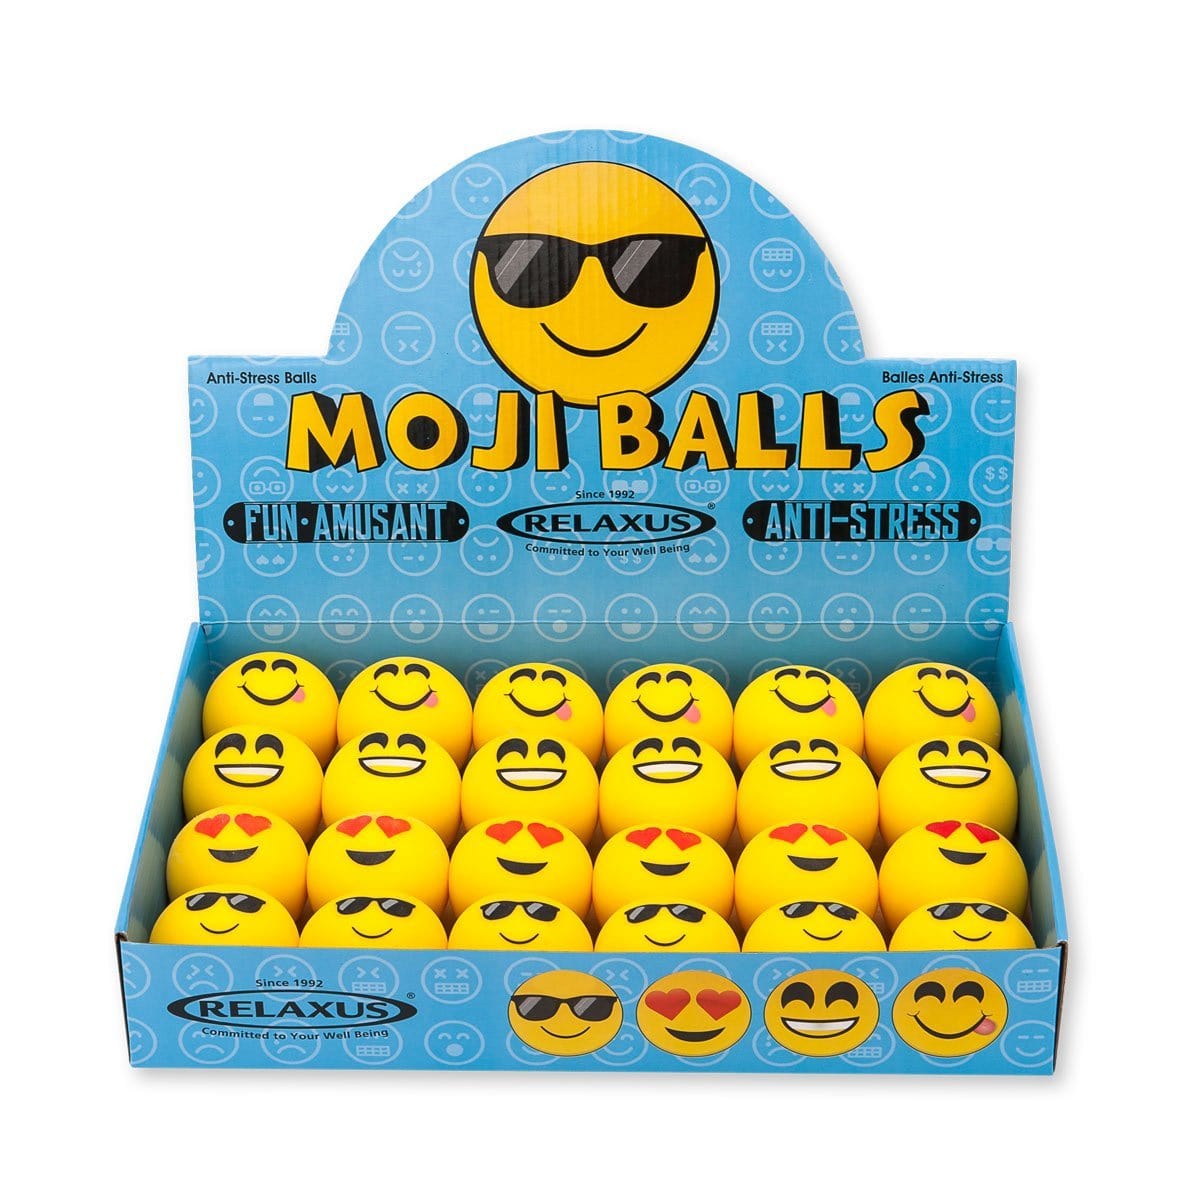 http://relaxusonline.com/cdn/shop/products/701520_Moji-Balls_b.jpg?v=1650916802